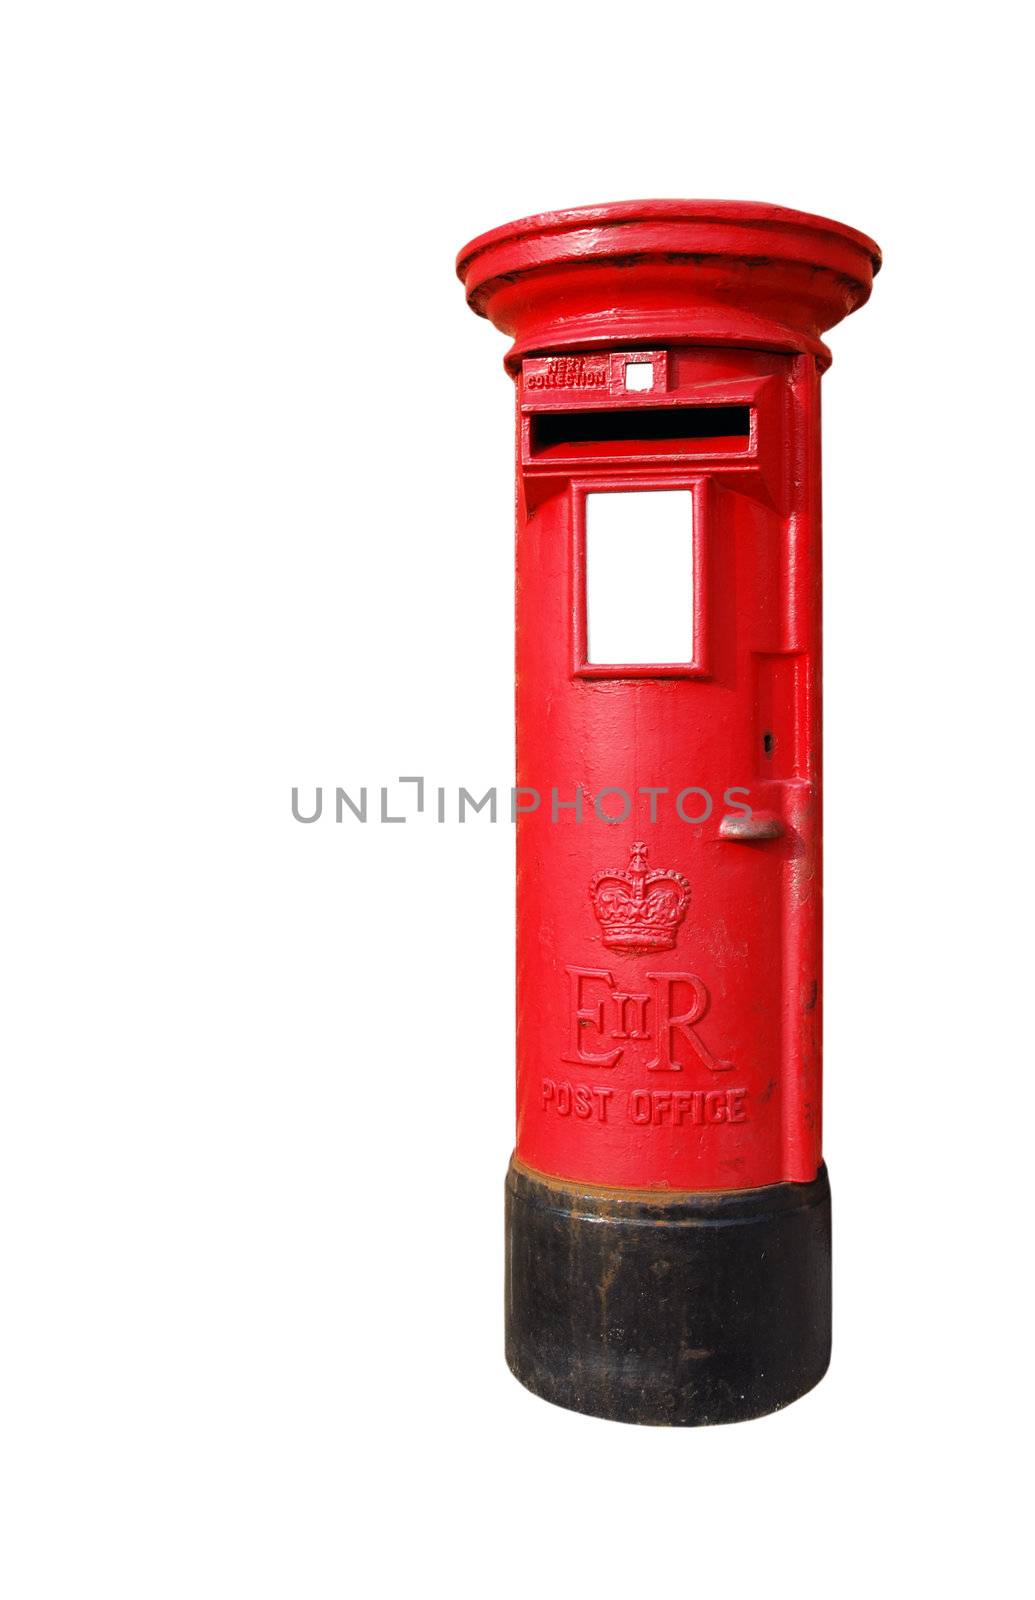 British postbox by luissantos84